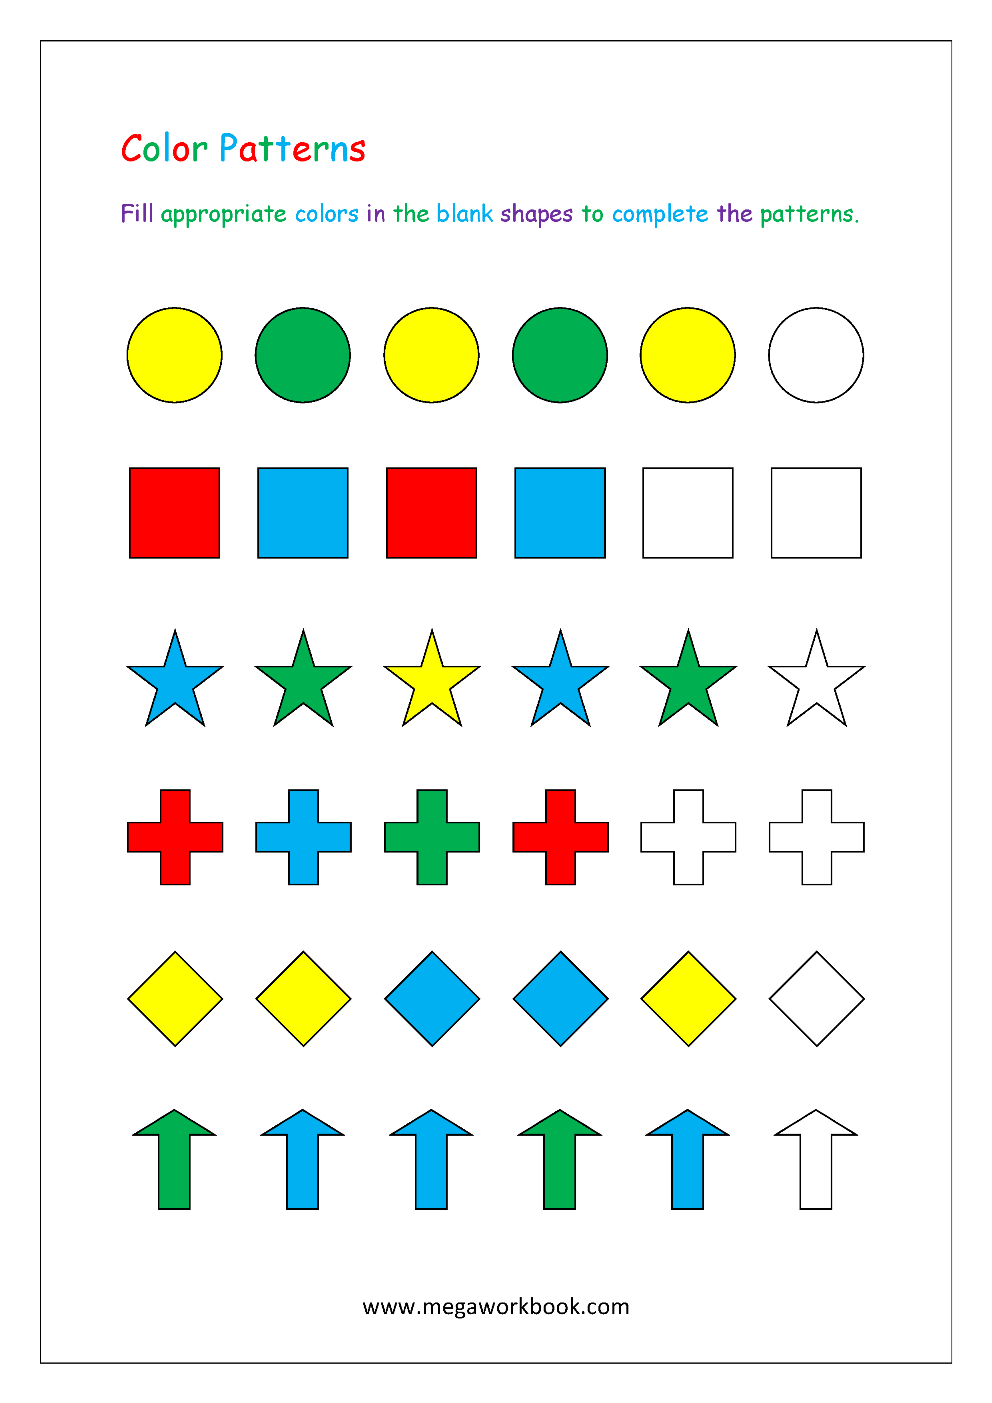 Pattern Worksheets For Kindergarten - Color Patterns - Growing Patterns